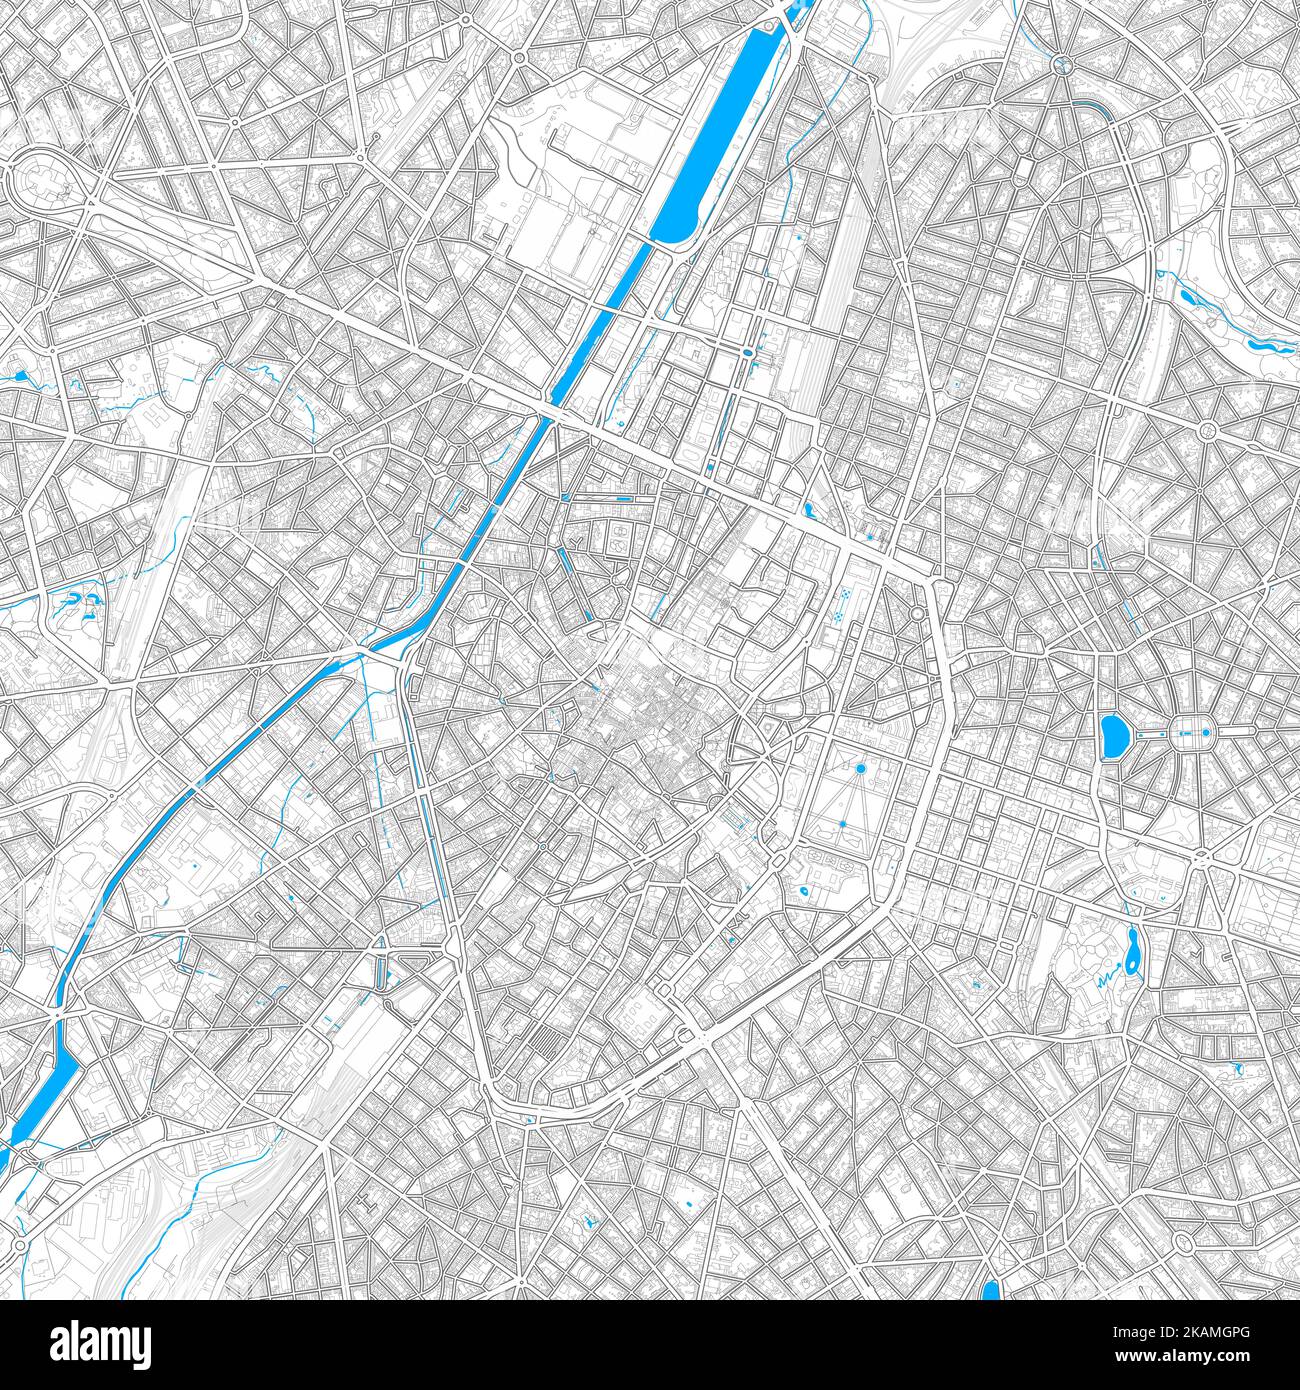 Brüssel, Belgien hochauflösende Vektorkarte mit editierbaren Pfaden. Helle Umrisse für Hauptstraßen. Verwenden Sie es für jeden gedruckten und digitalen Hintergrund. Blau Stock Vektor